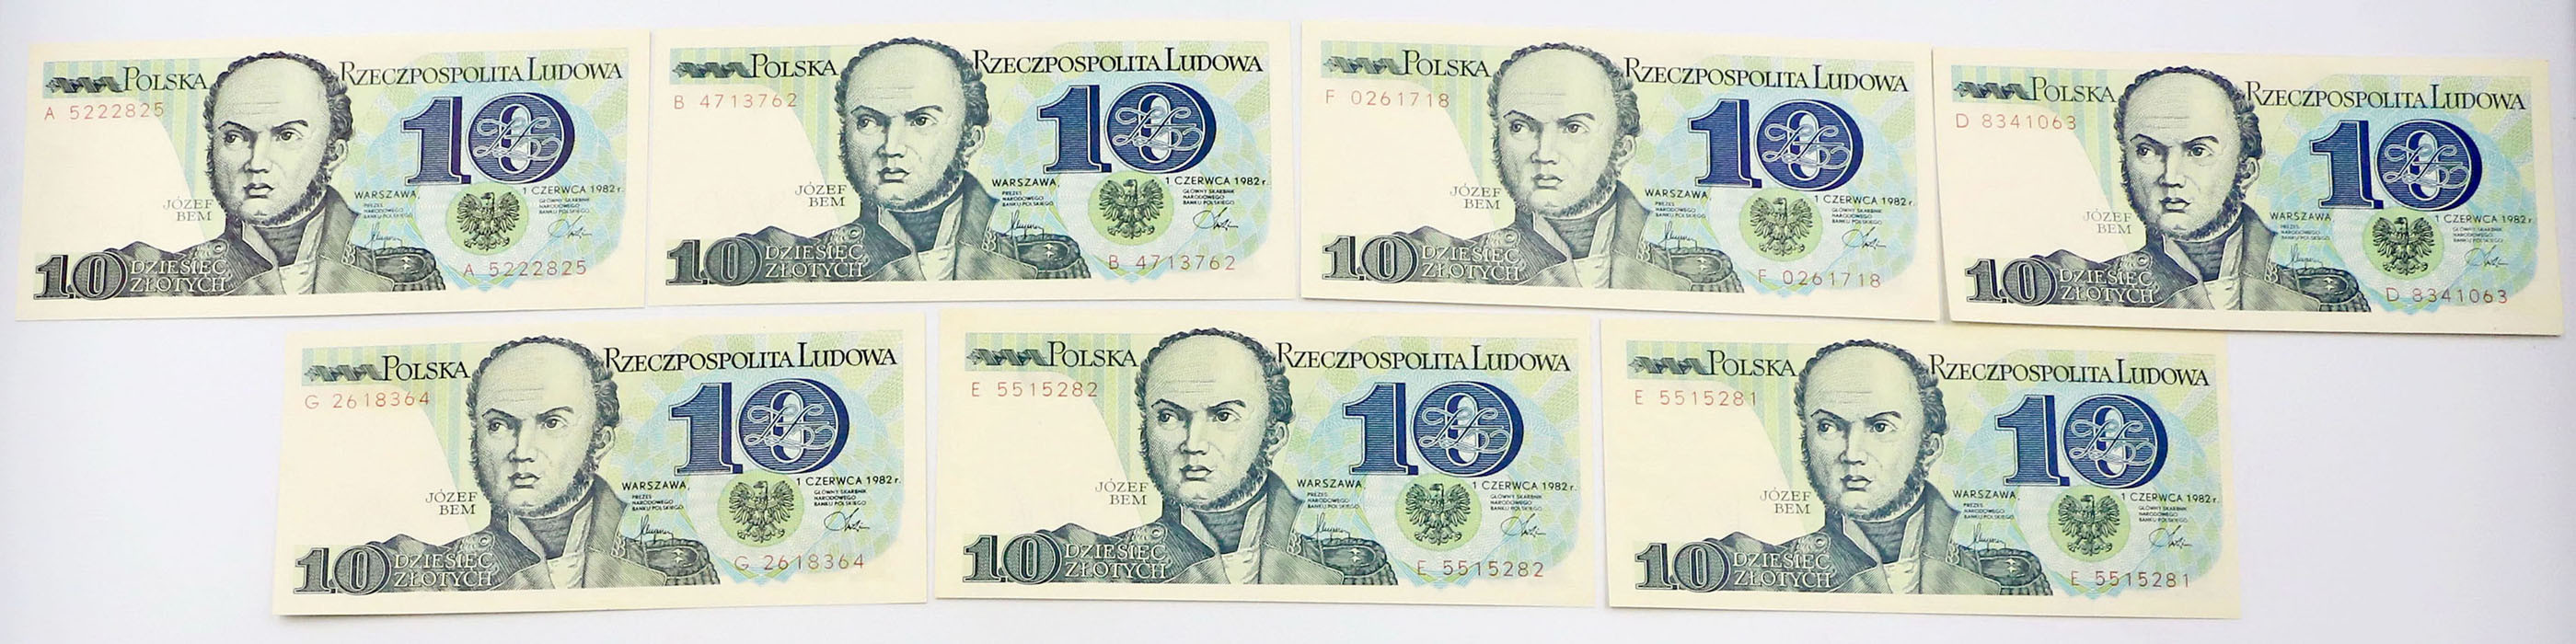 10 złotych 1982, zestaw 7 sztuk